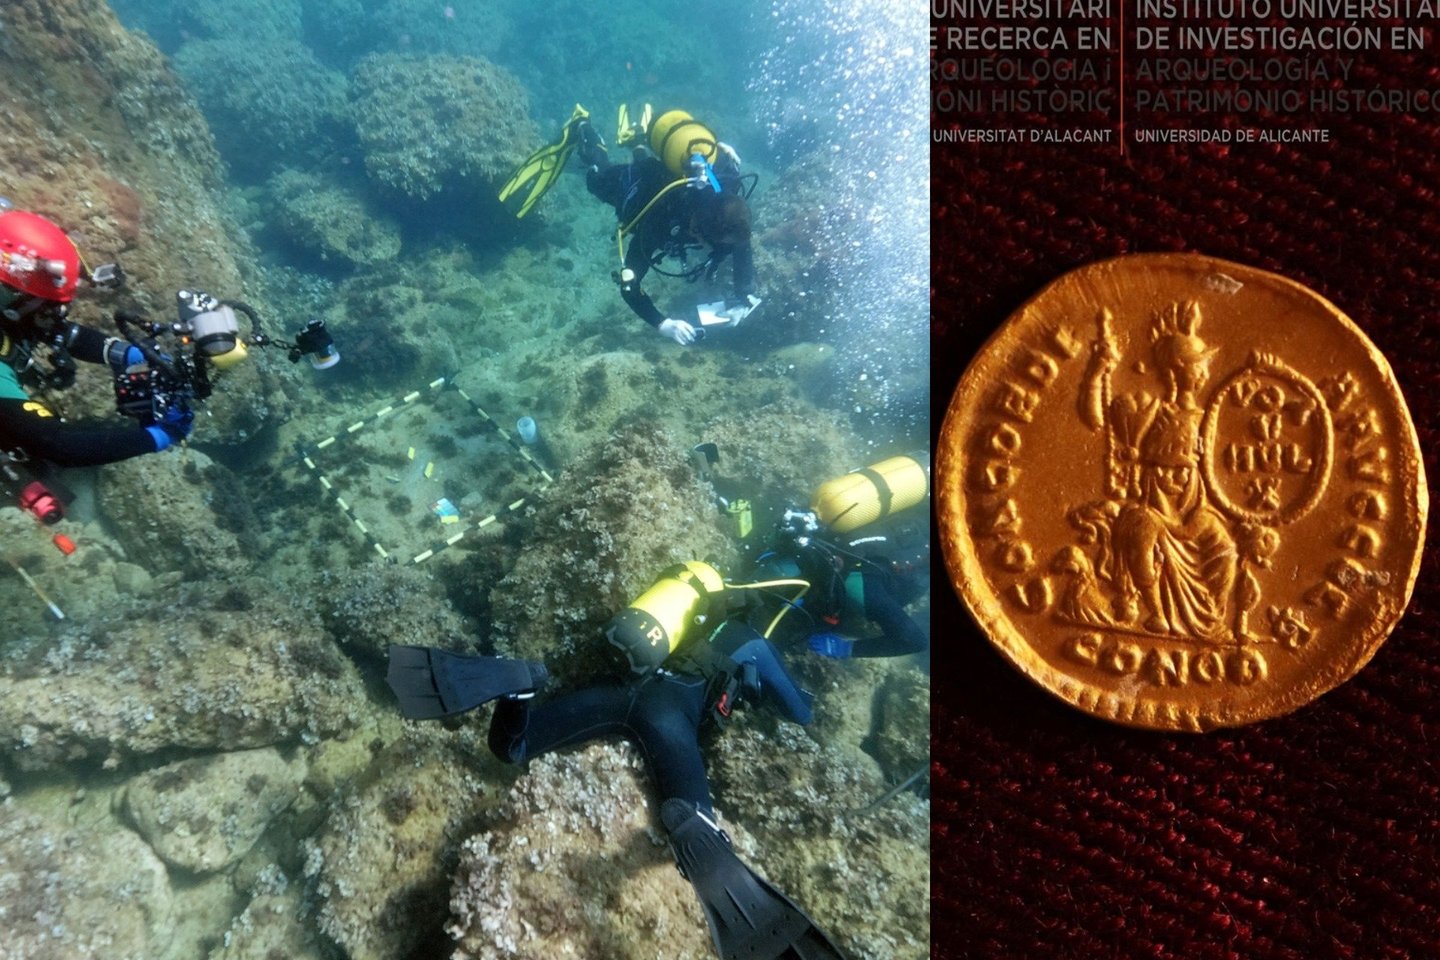 Du narai mėgėjai, plaukioję Ispanijos pakrantėje, aptiko didžiulį 1500 metų senumo auksinių monetų lobį – vieną didžiausių iš visų datuojamų Romos imperijos laikais.<br> Alikantės universiteto nuotr.